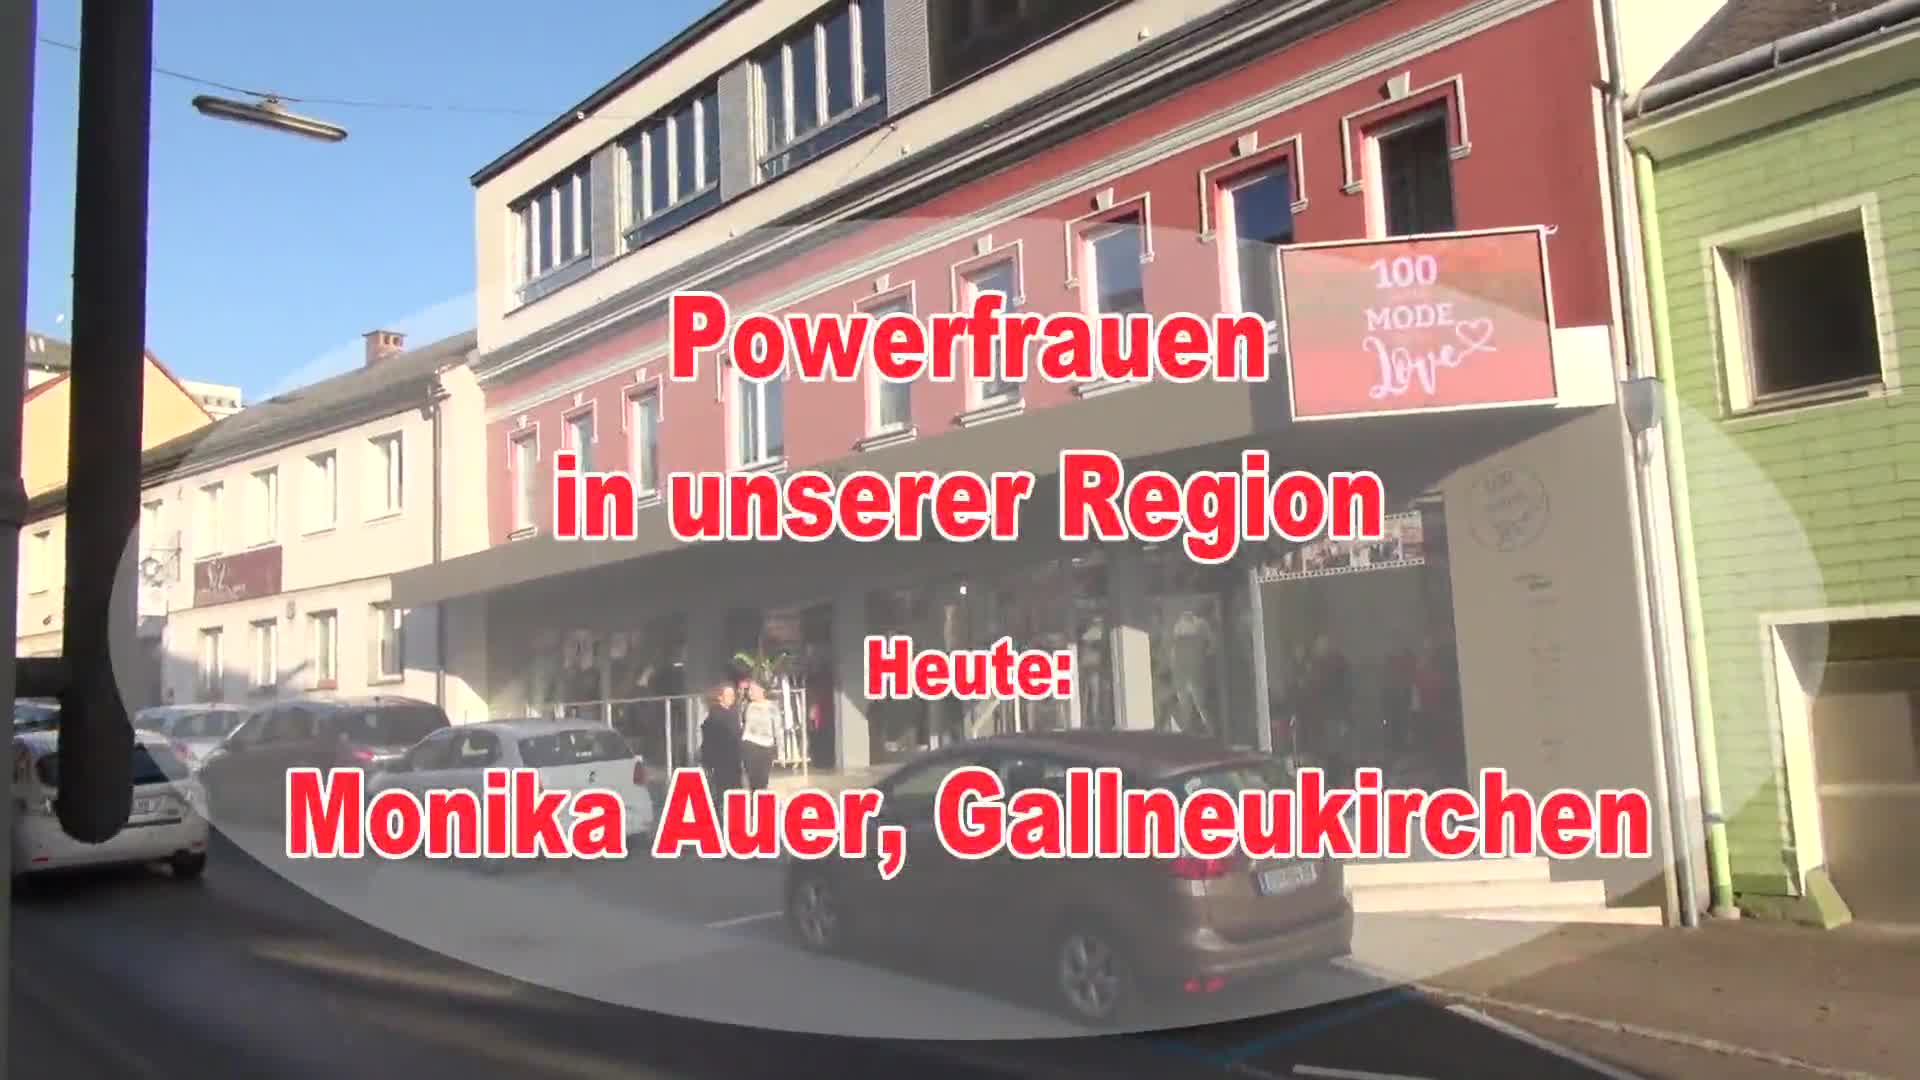 Powerfrauen in unserer Region - Monika Auer